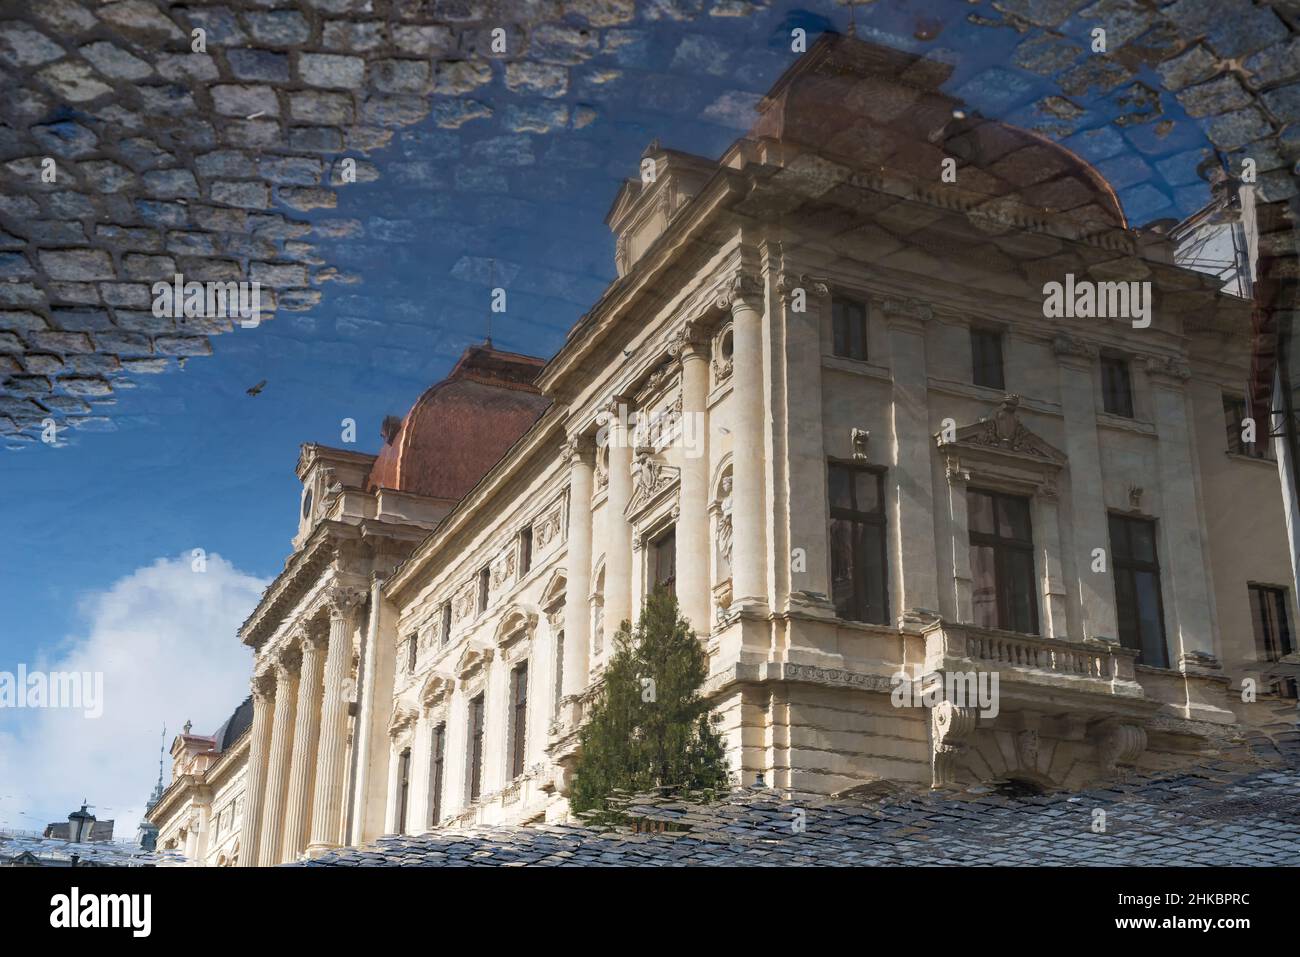 Après la pluie à Bucarest, Roumanie - reflet de la maison dans une flaque - image à l'envers Banque D'Images